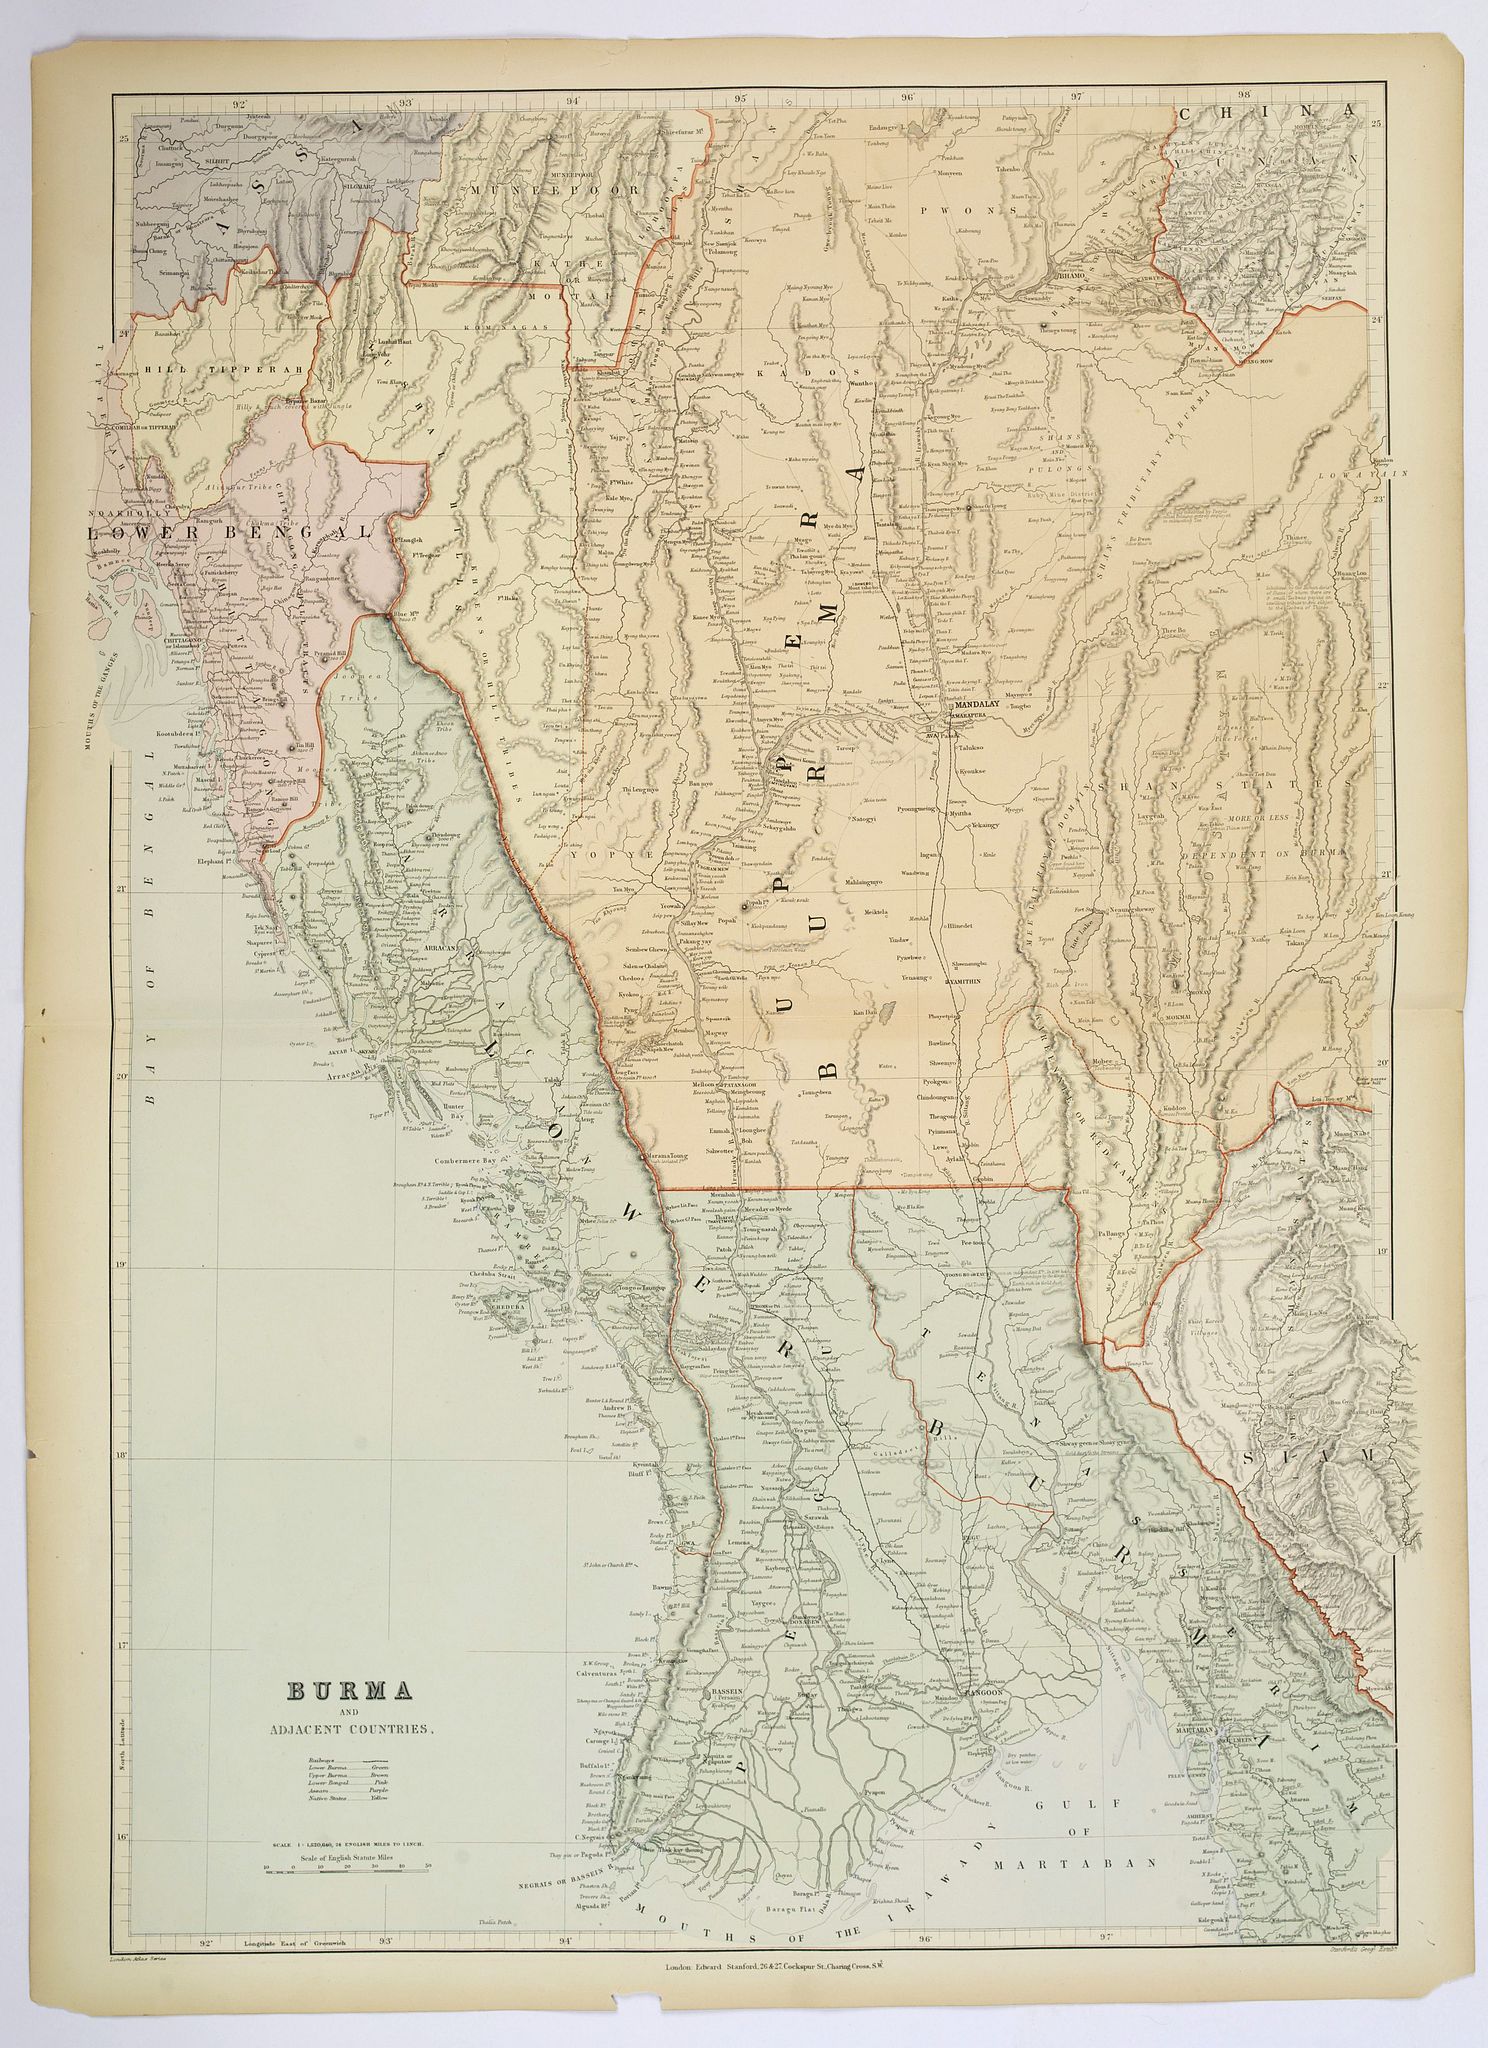 Burma and adjacent countries